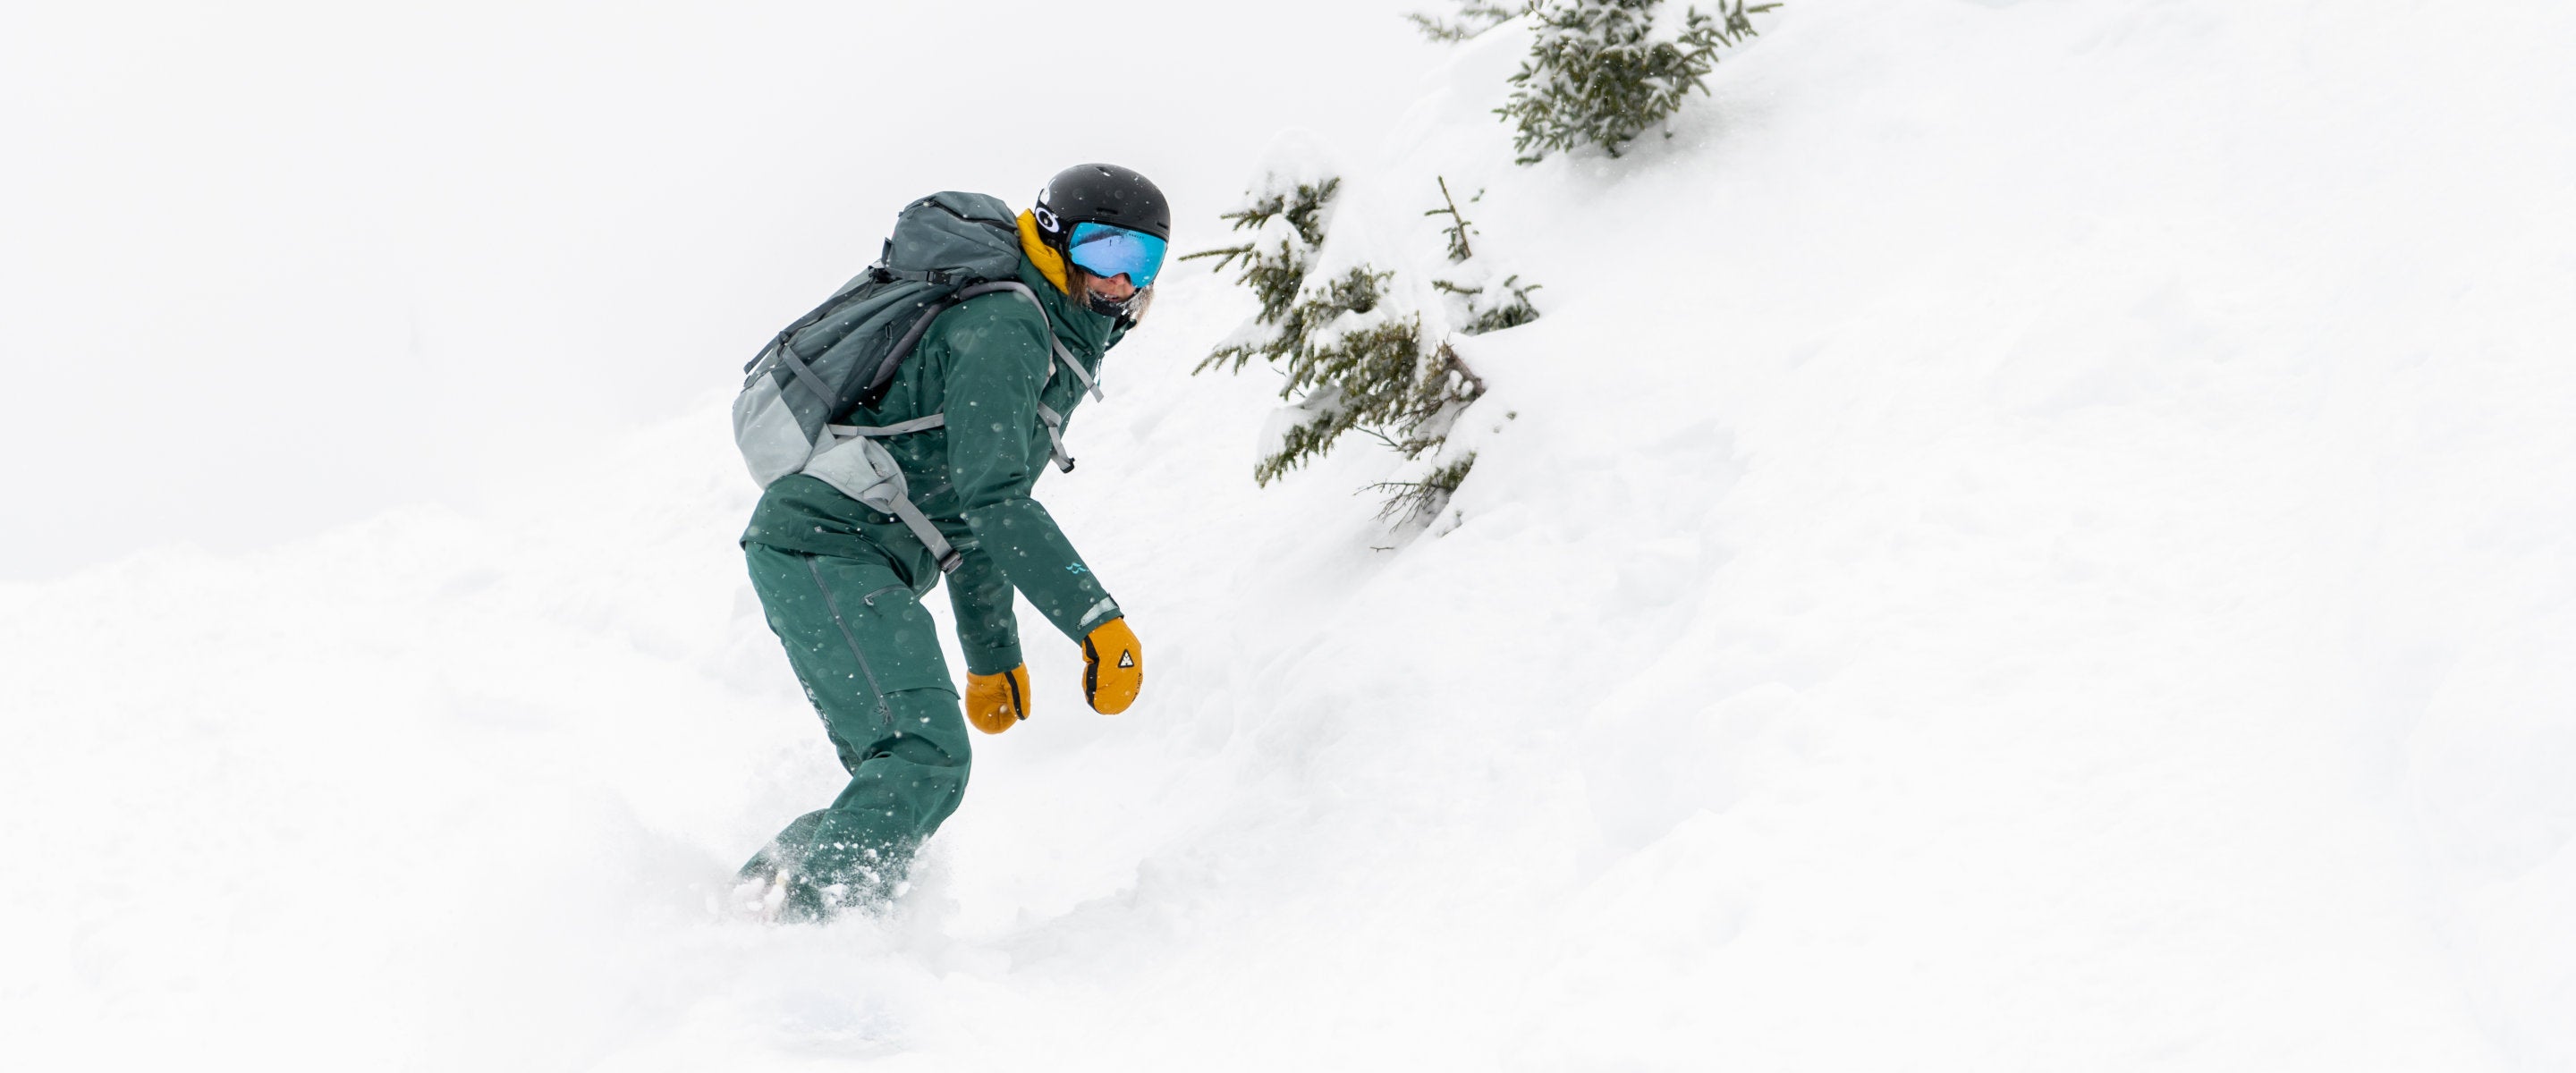 Gants de ski chauffants : tout ce que vous devez savoir – Oberson